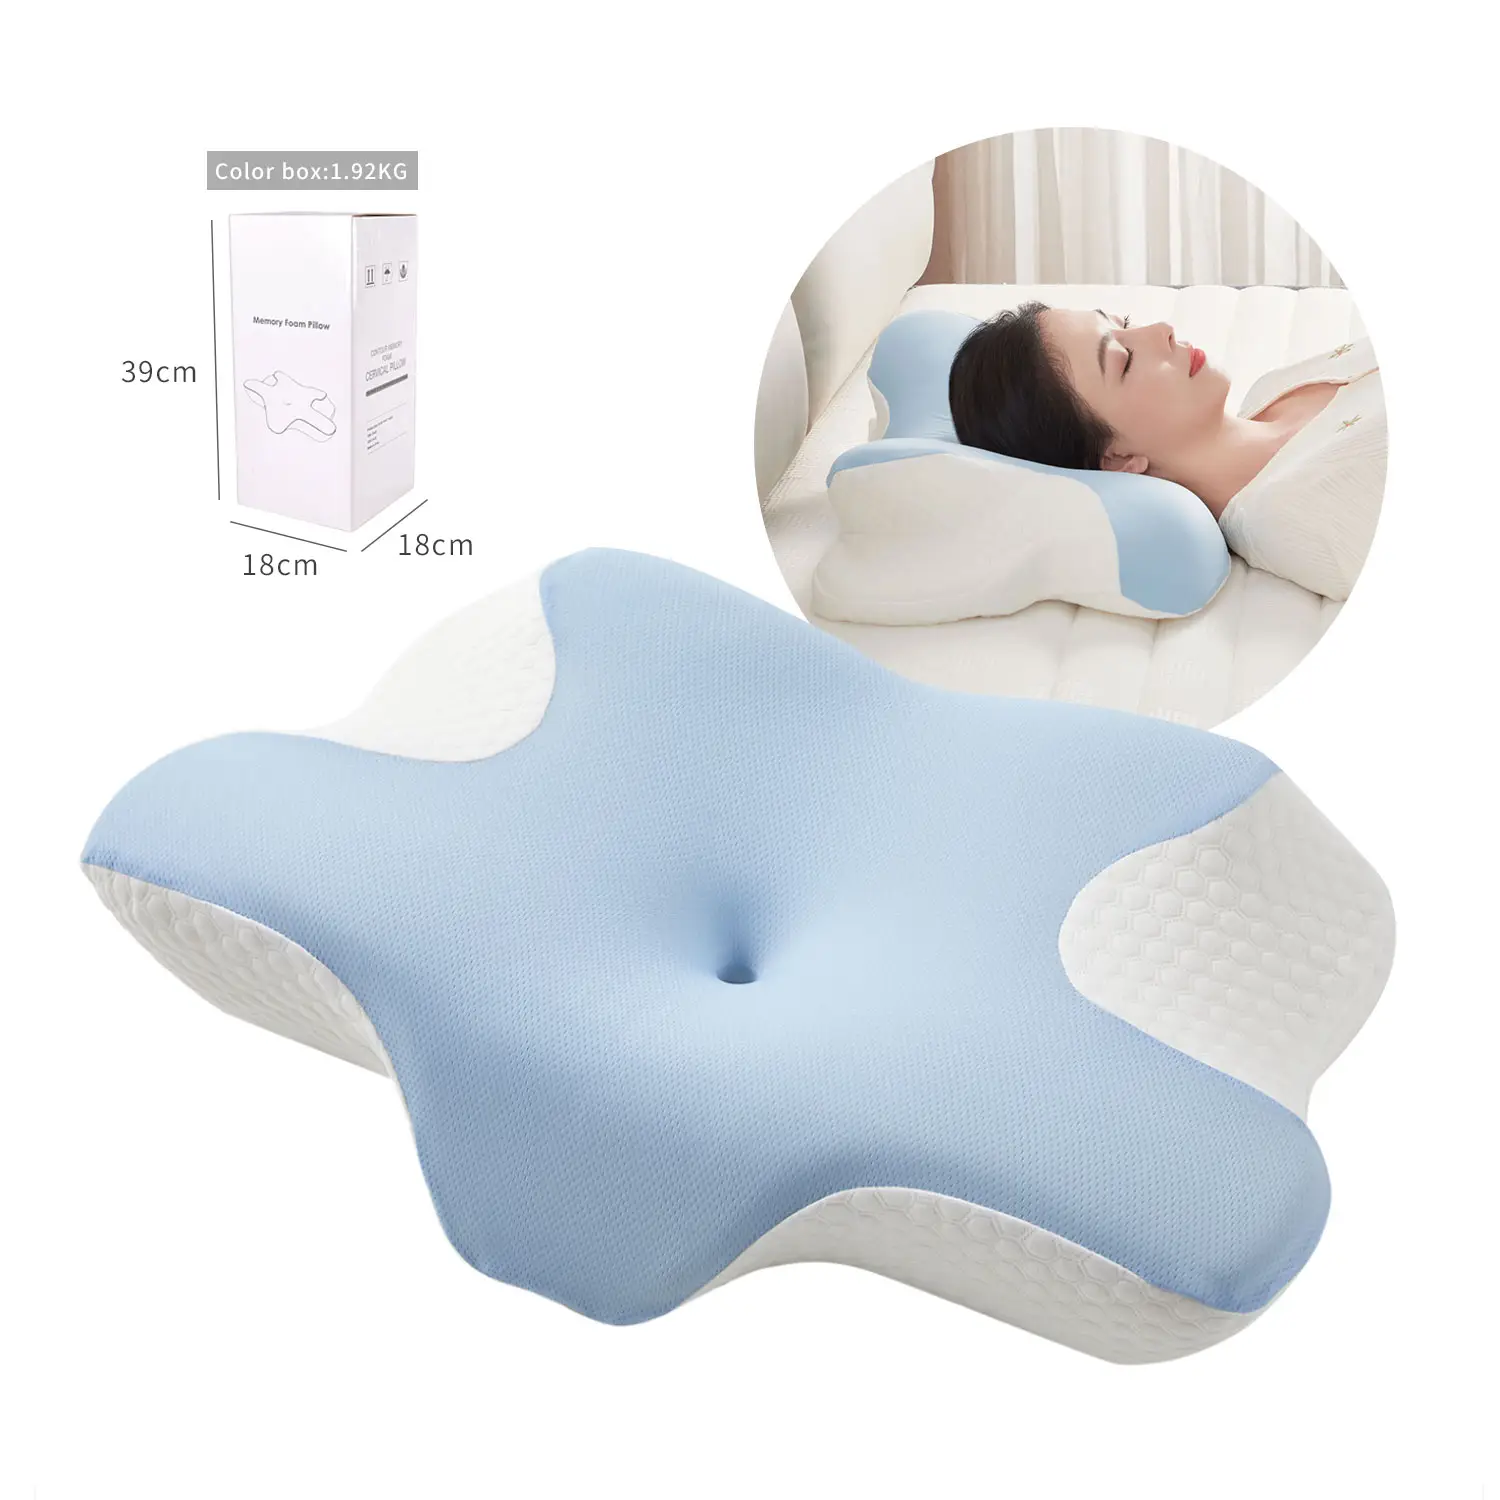 Ergonômico Ortopédico Pescoço Suporte Cervical travesseiro Capa Removível Memória Espuma Deep Sleep Pillow para Pescoço Alívio Da Dor